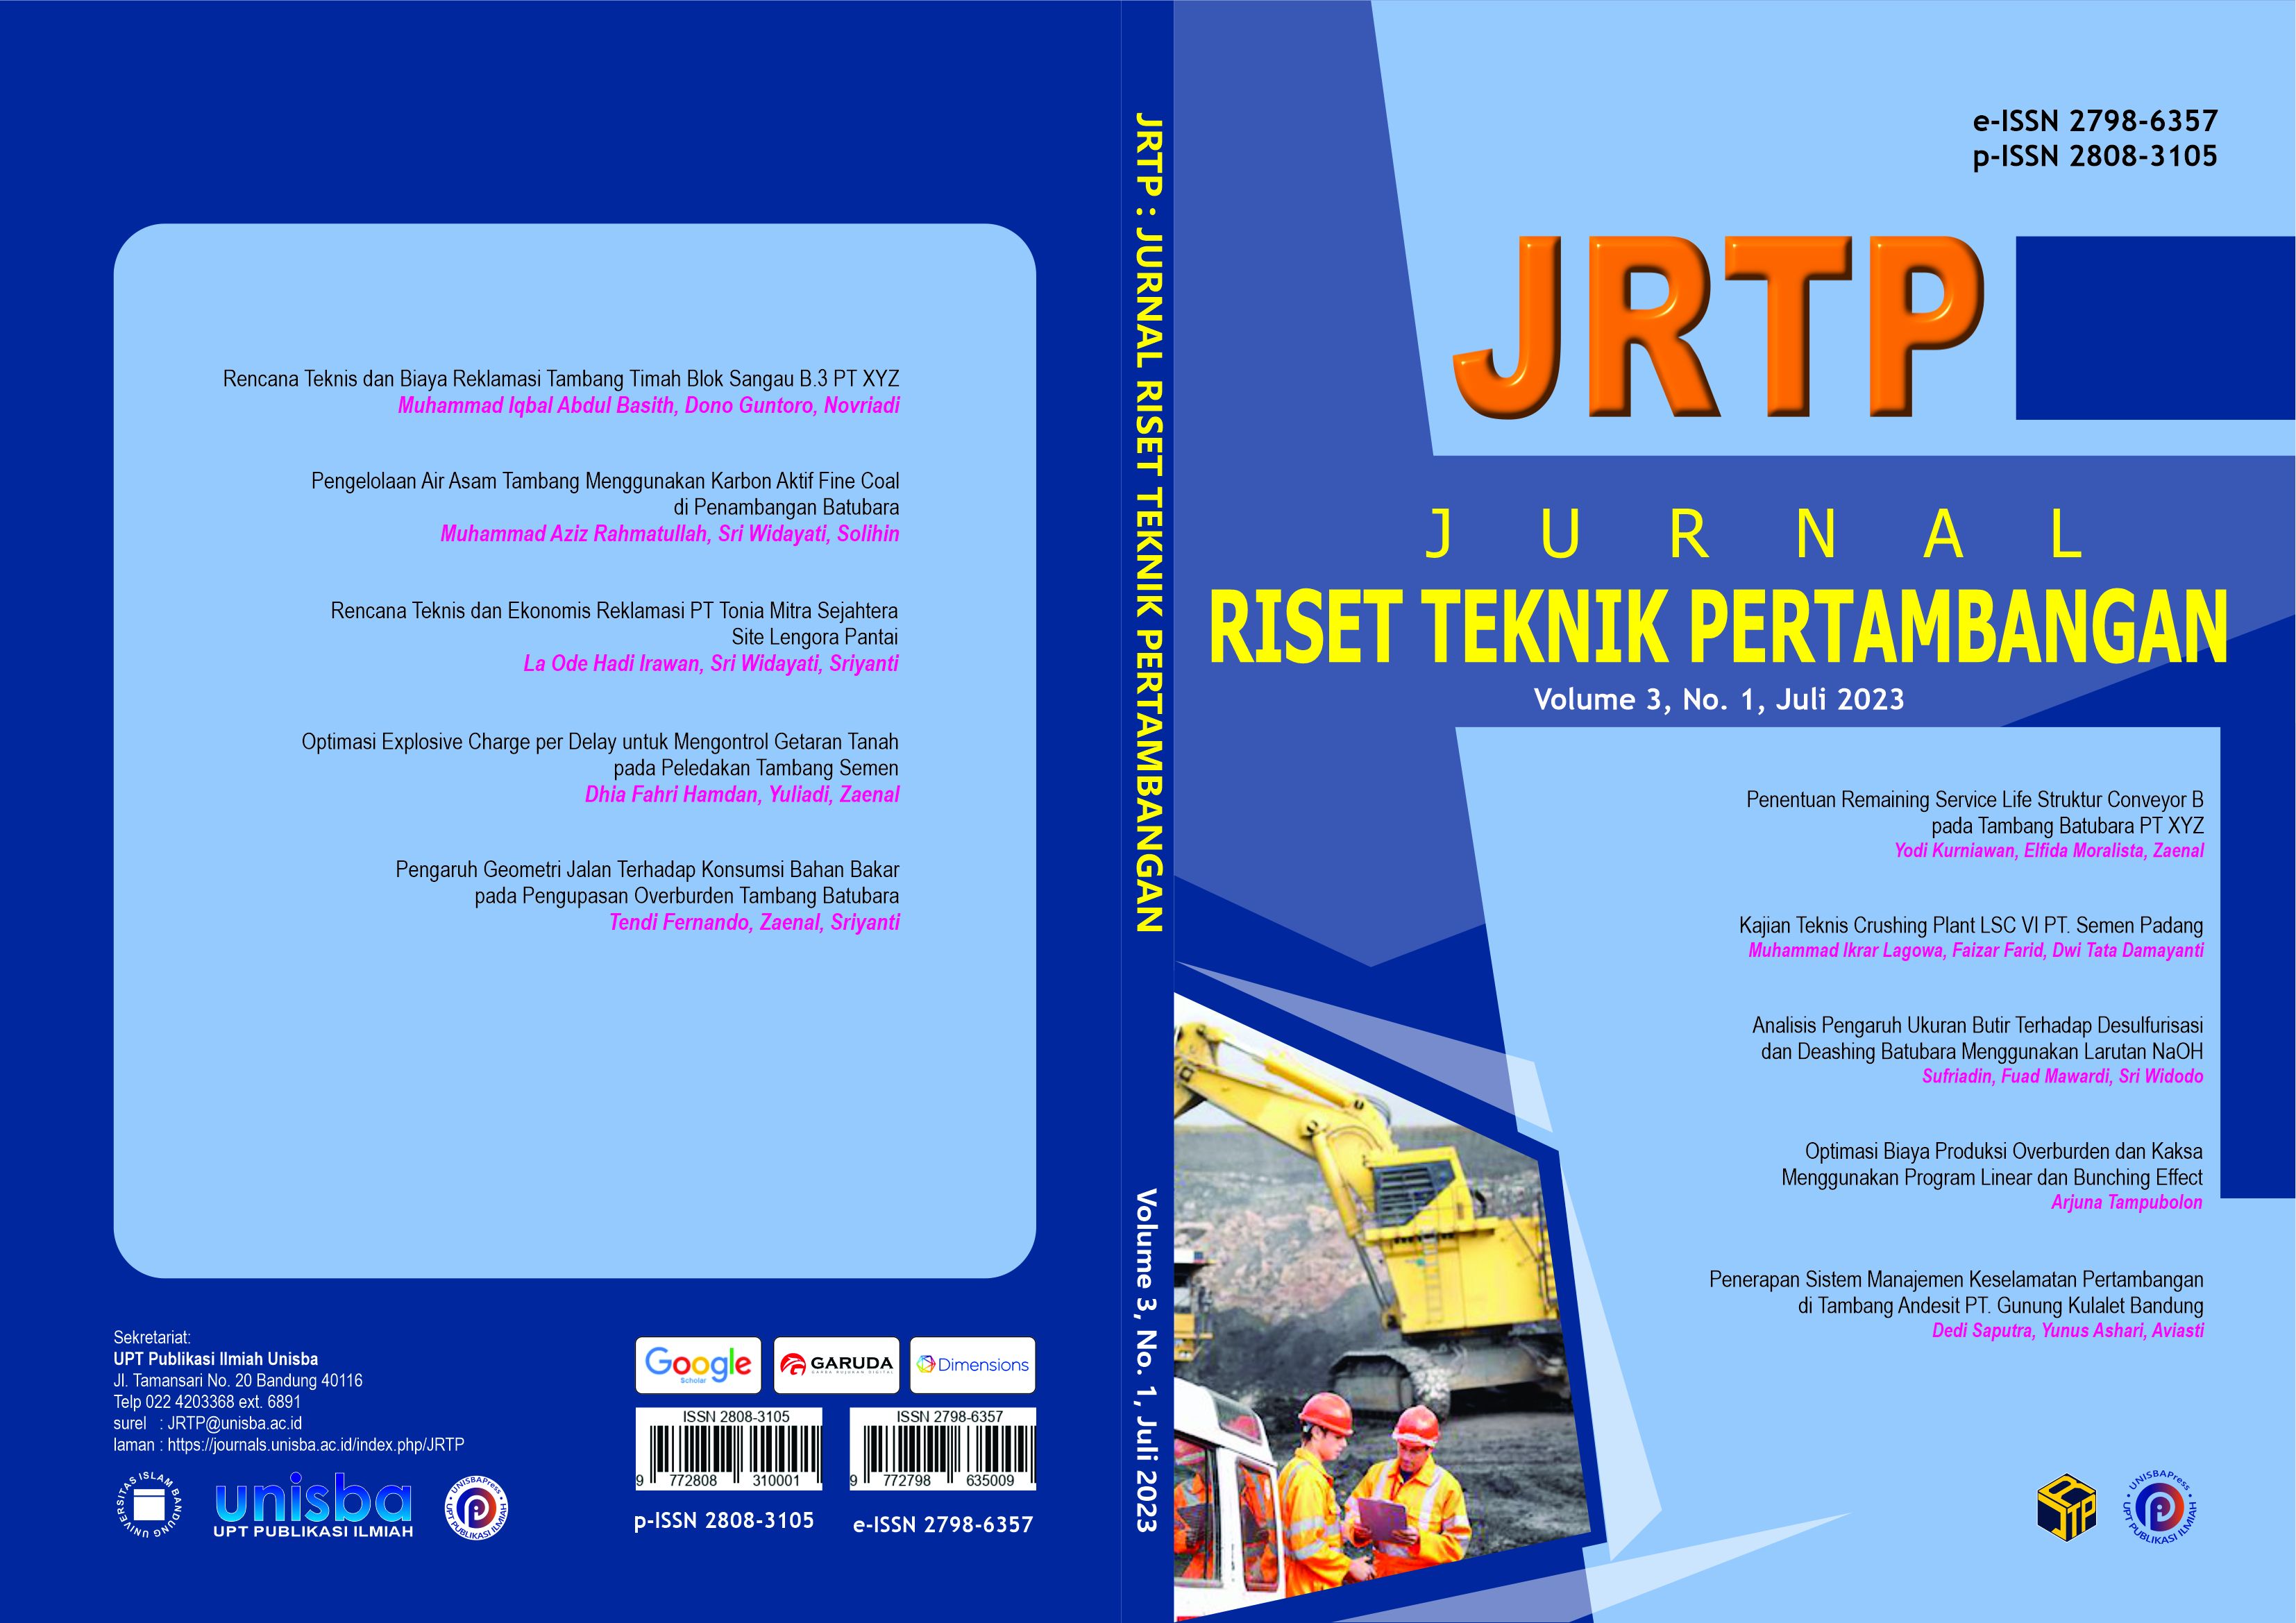 					View Volume 3, No. 1, Juli 2023, Jurnal Riset Teknik Pertambangan (JRTP)
				